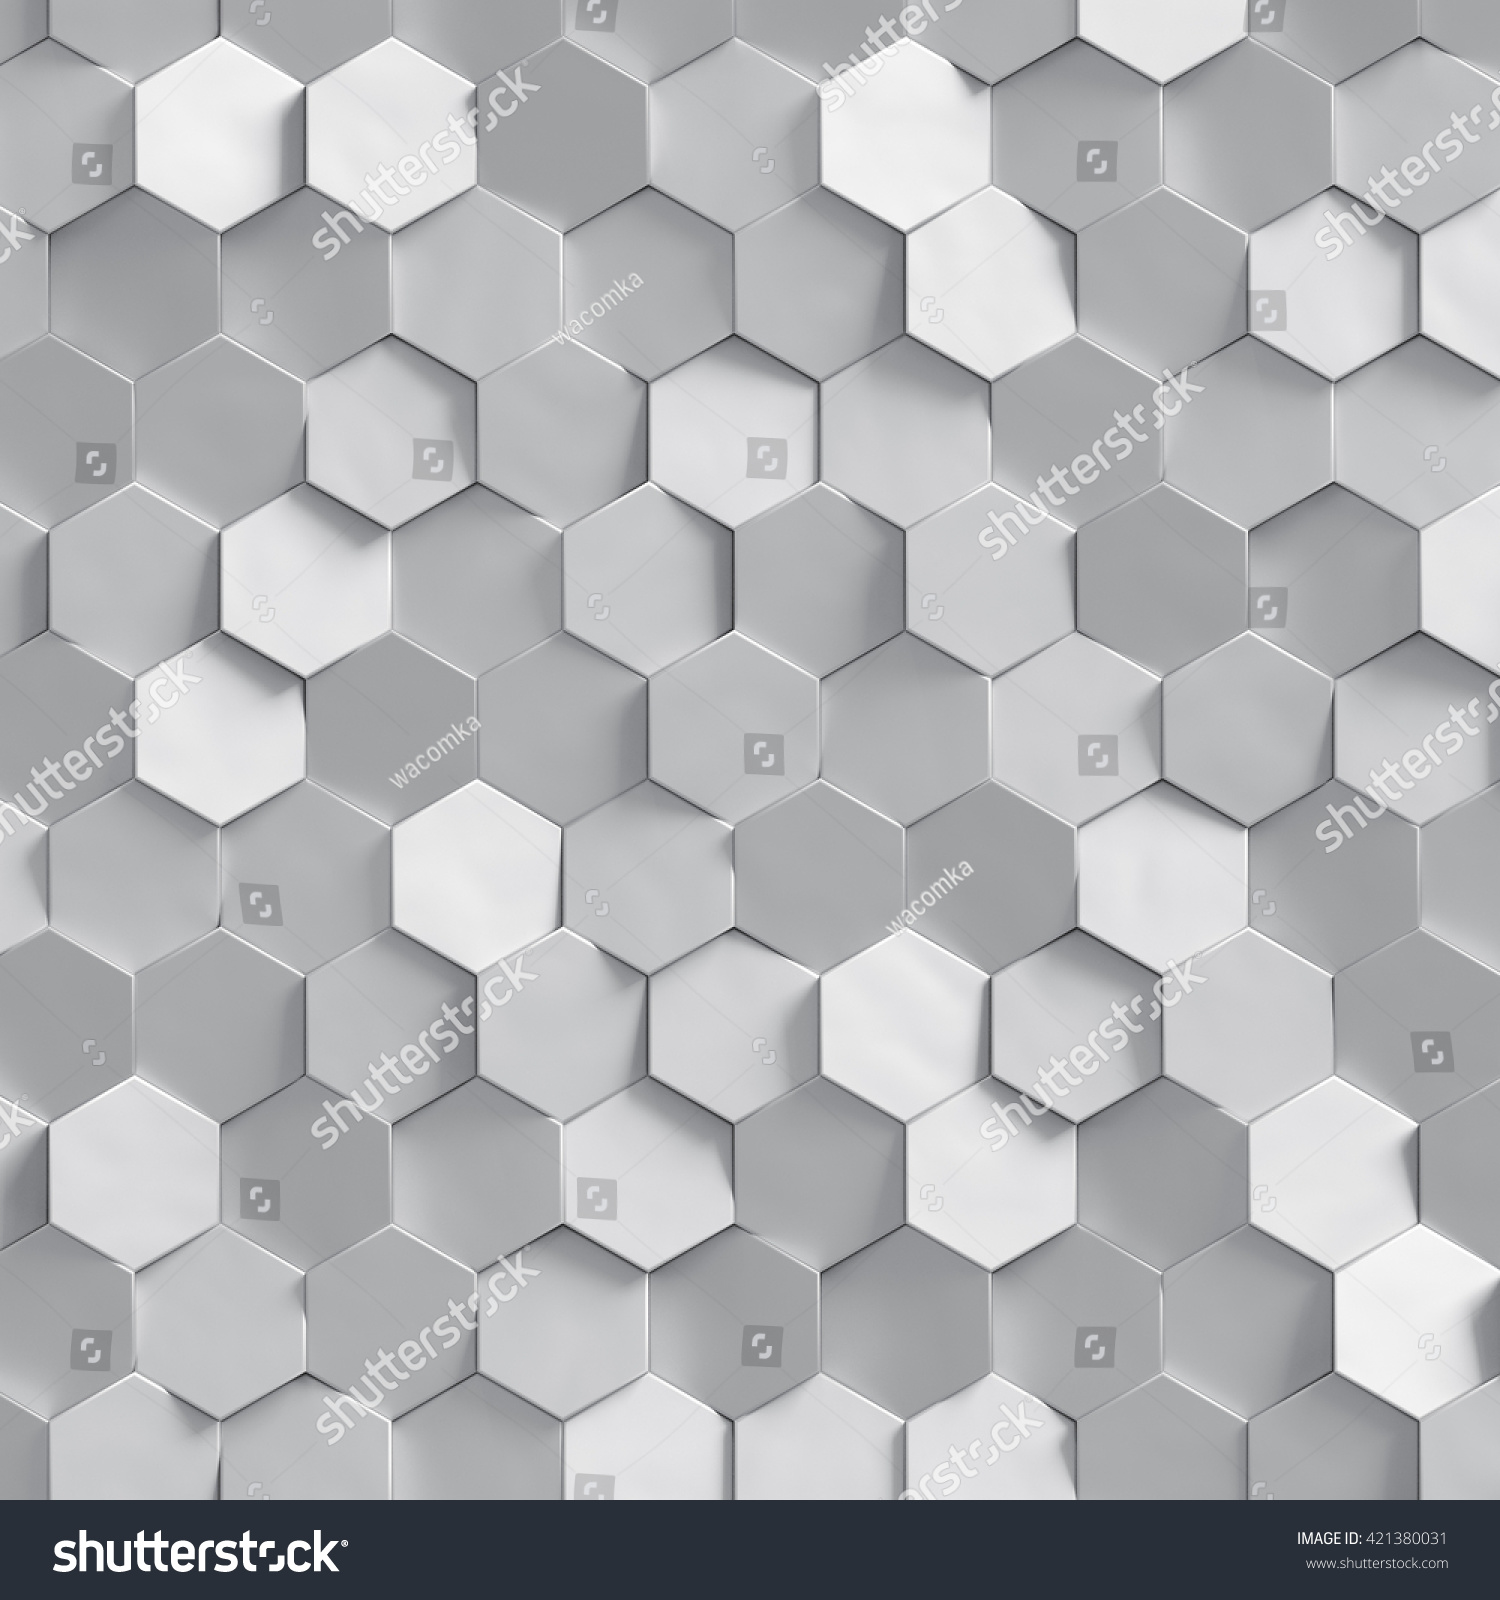 3dレンダリング 銀色のハニカムテクスチャ 白いクラスタのデジタルイラスト 抽象的な幾何学的な背景 のイラスト素材